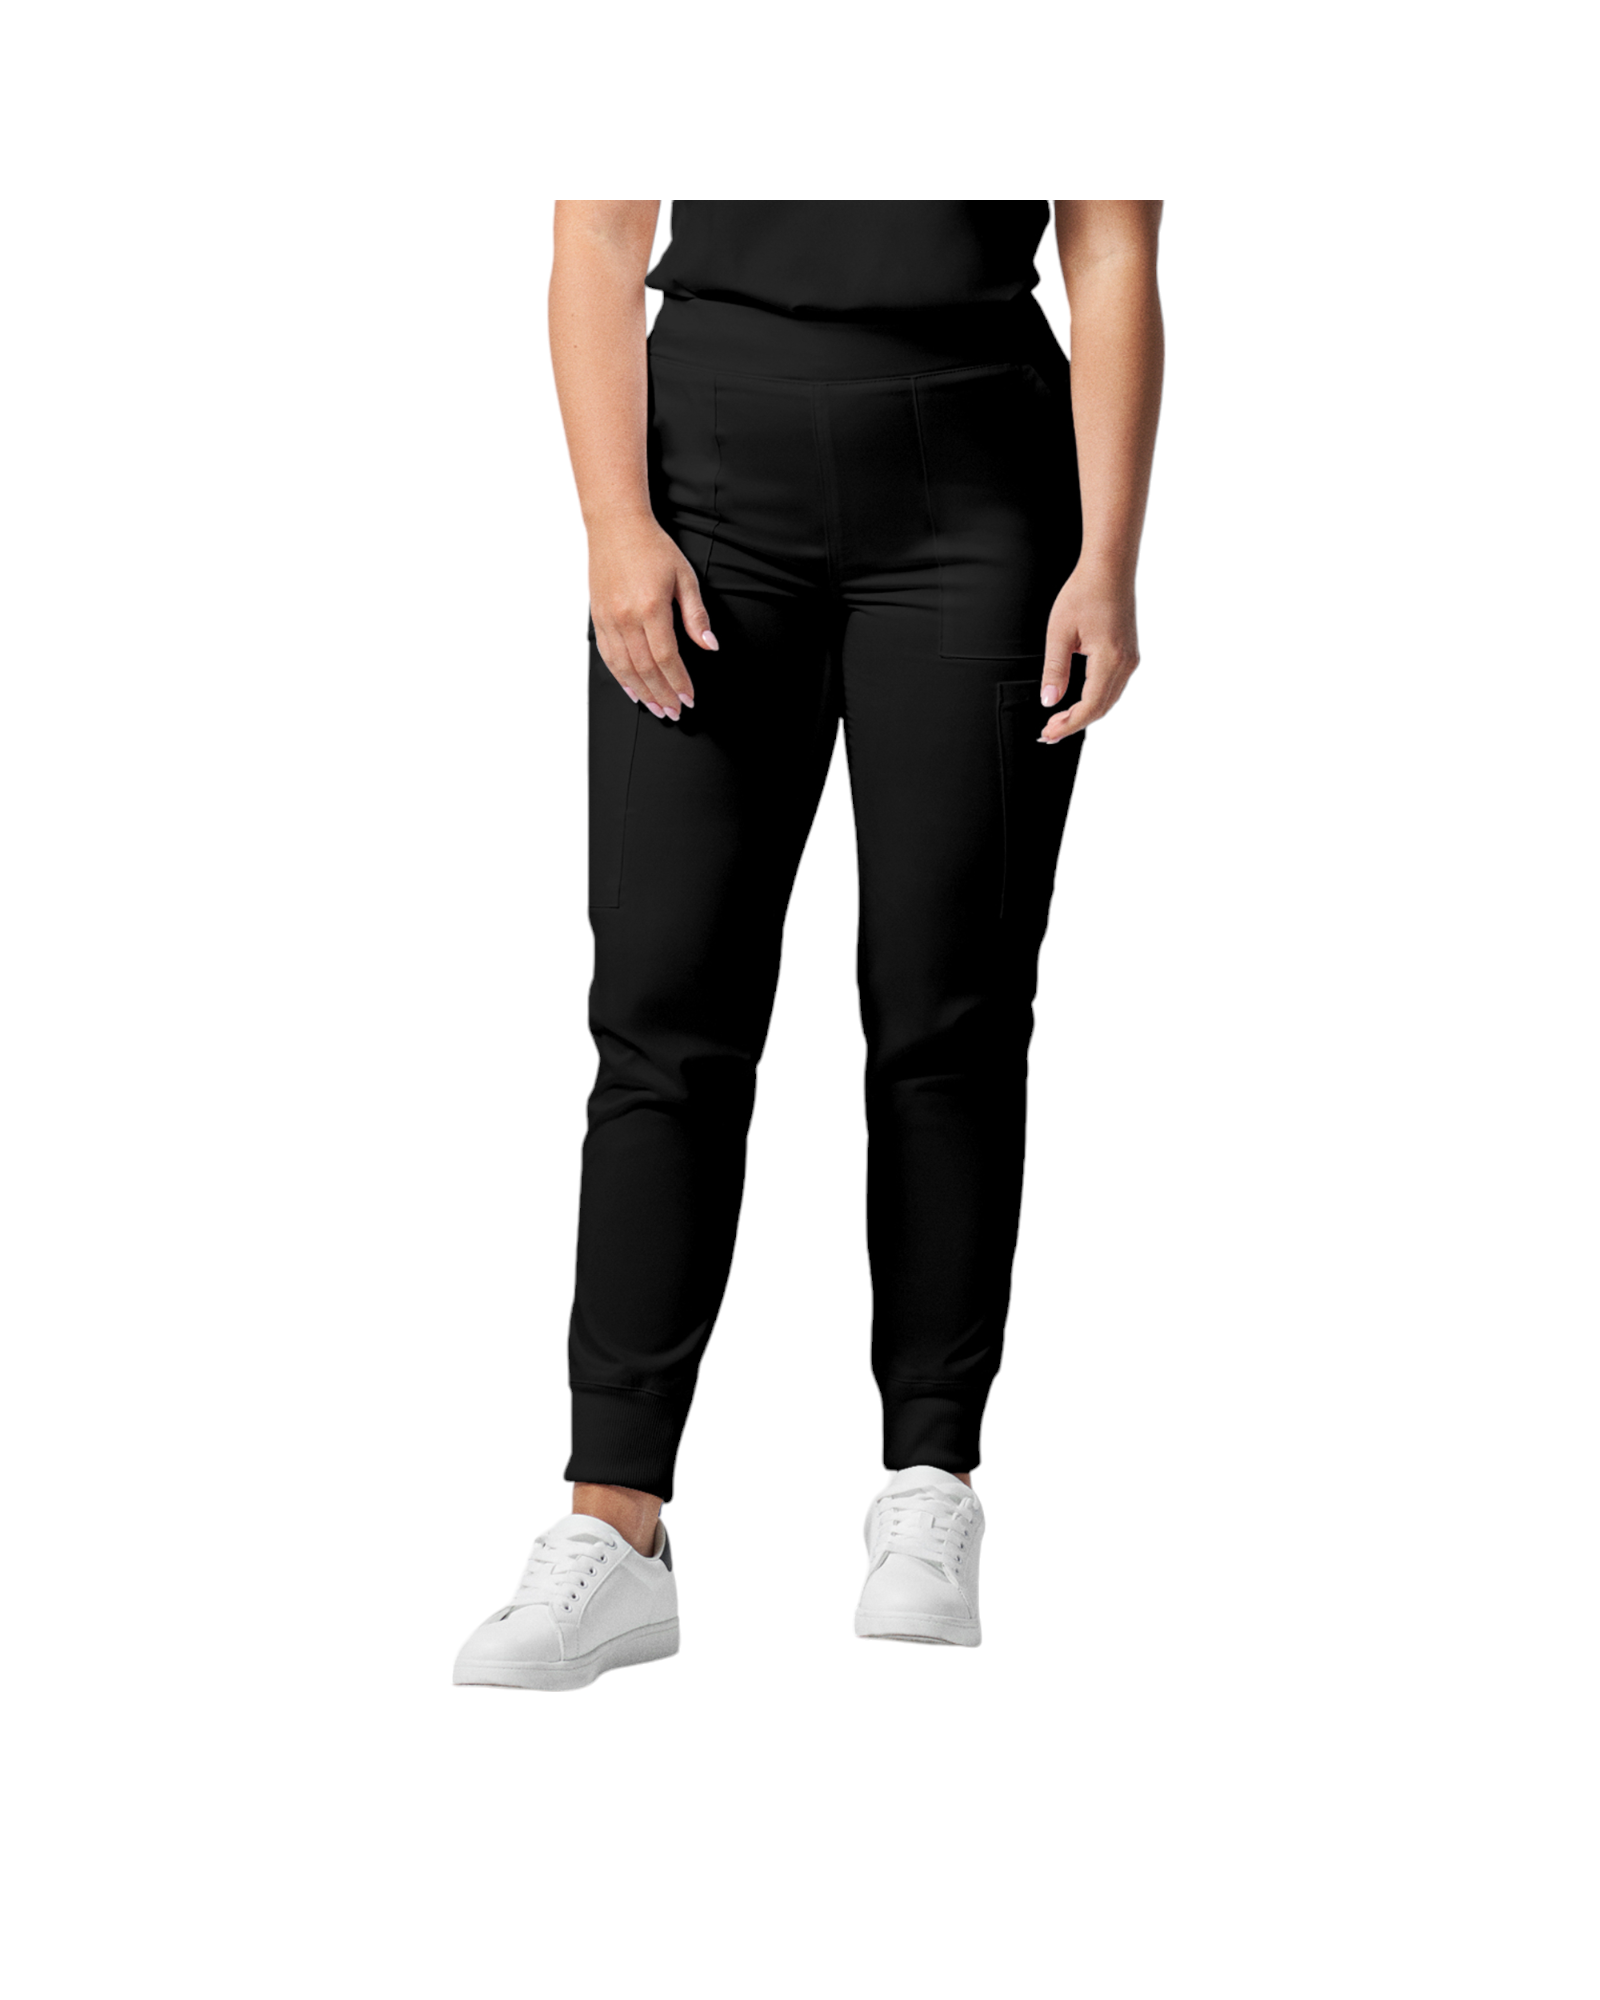 Pantalon de style jogger 6 poches pour femmes Landau Proflex #LB406-OS couleur Noir